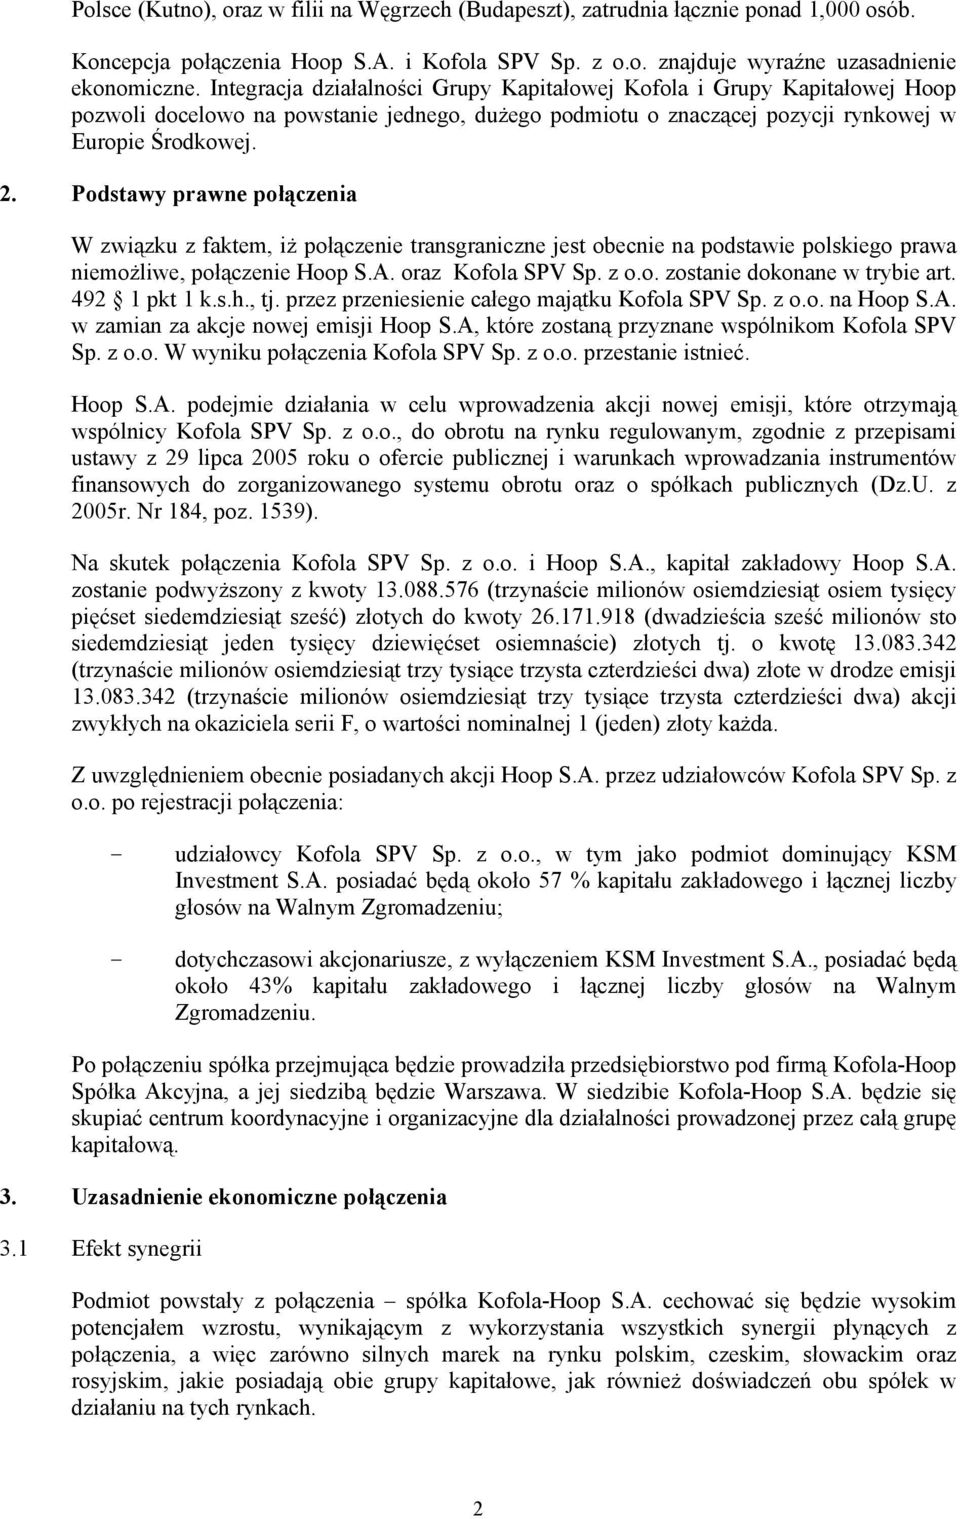 Podstawy prawne połączenia W związku z faktem, iż połączenie transgraniczne jest obecnie na podstawie polskiego prawa niemożliwe, połączenie Hoop S.A. oraz Kofola SPV Sp. z o.o. zostanie dokonane w trybie art.